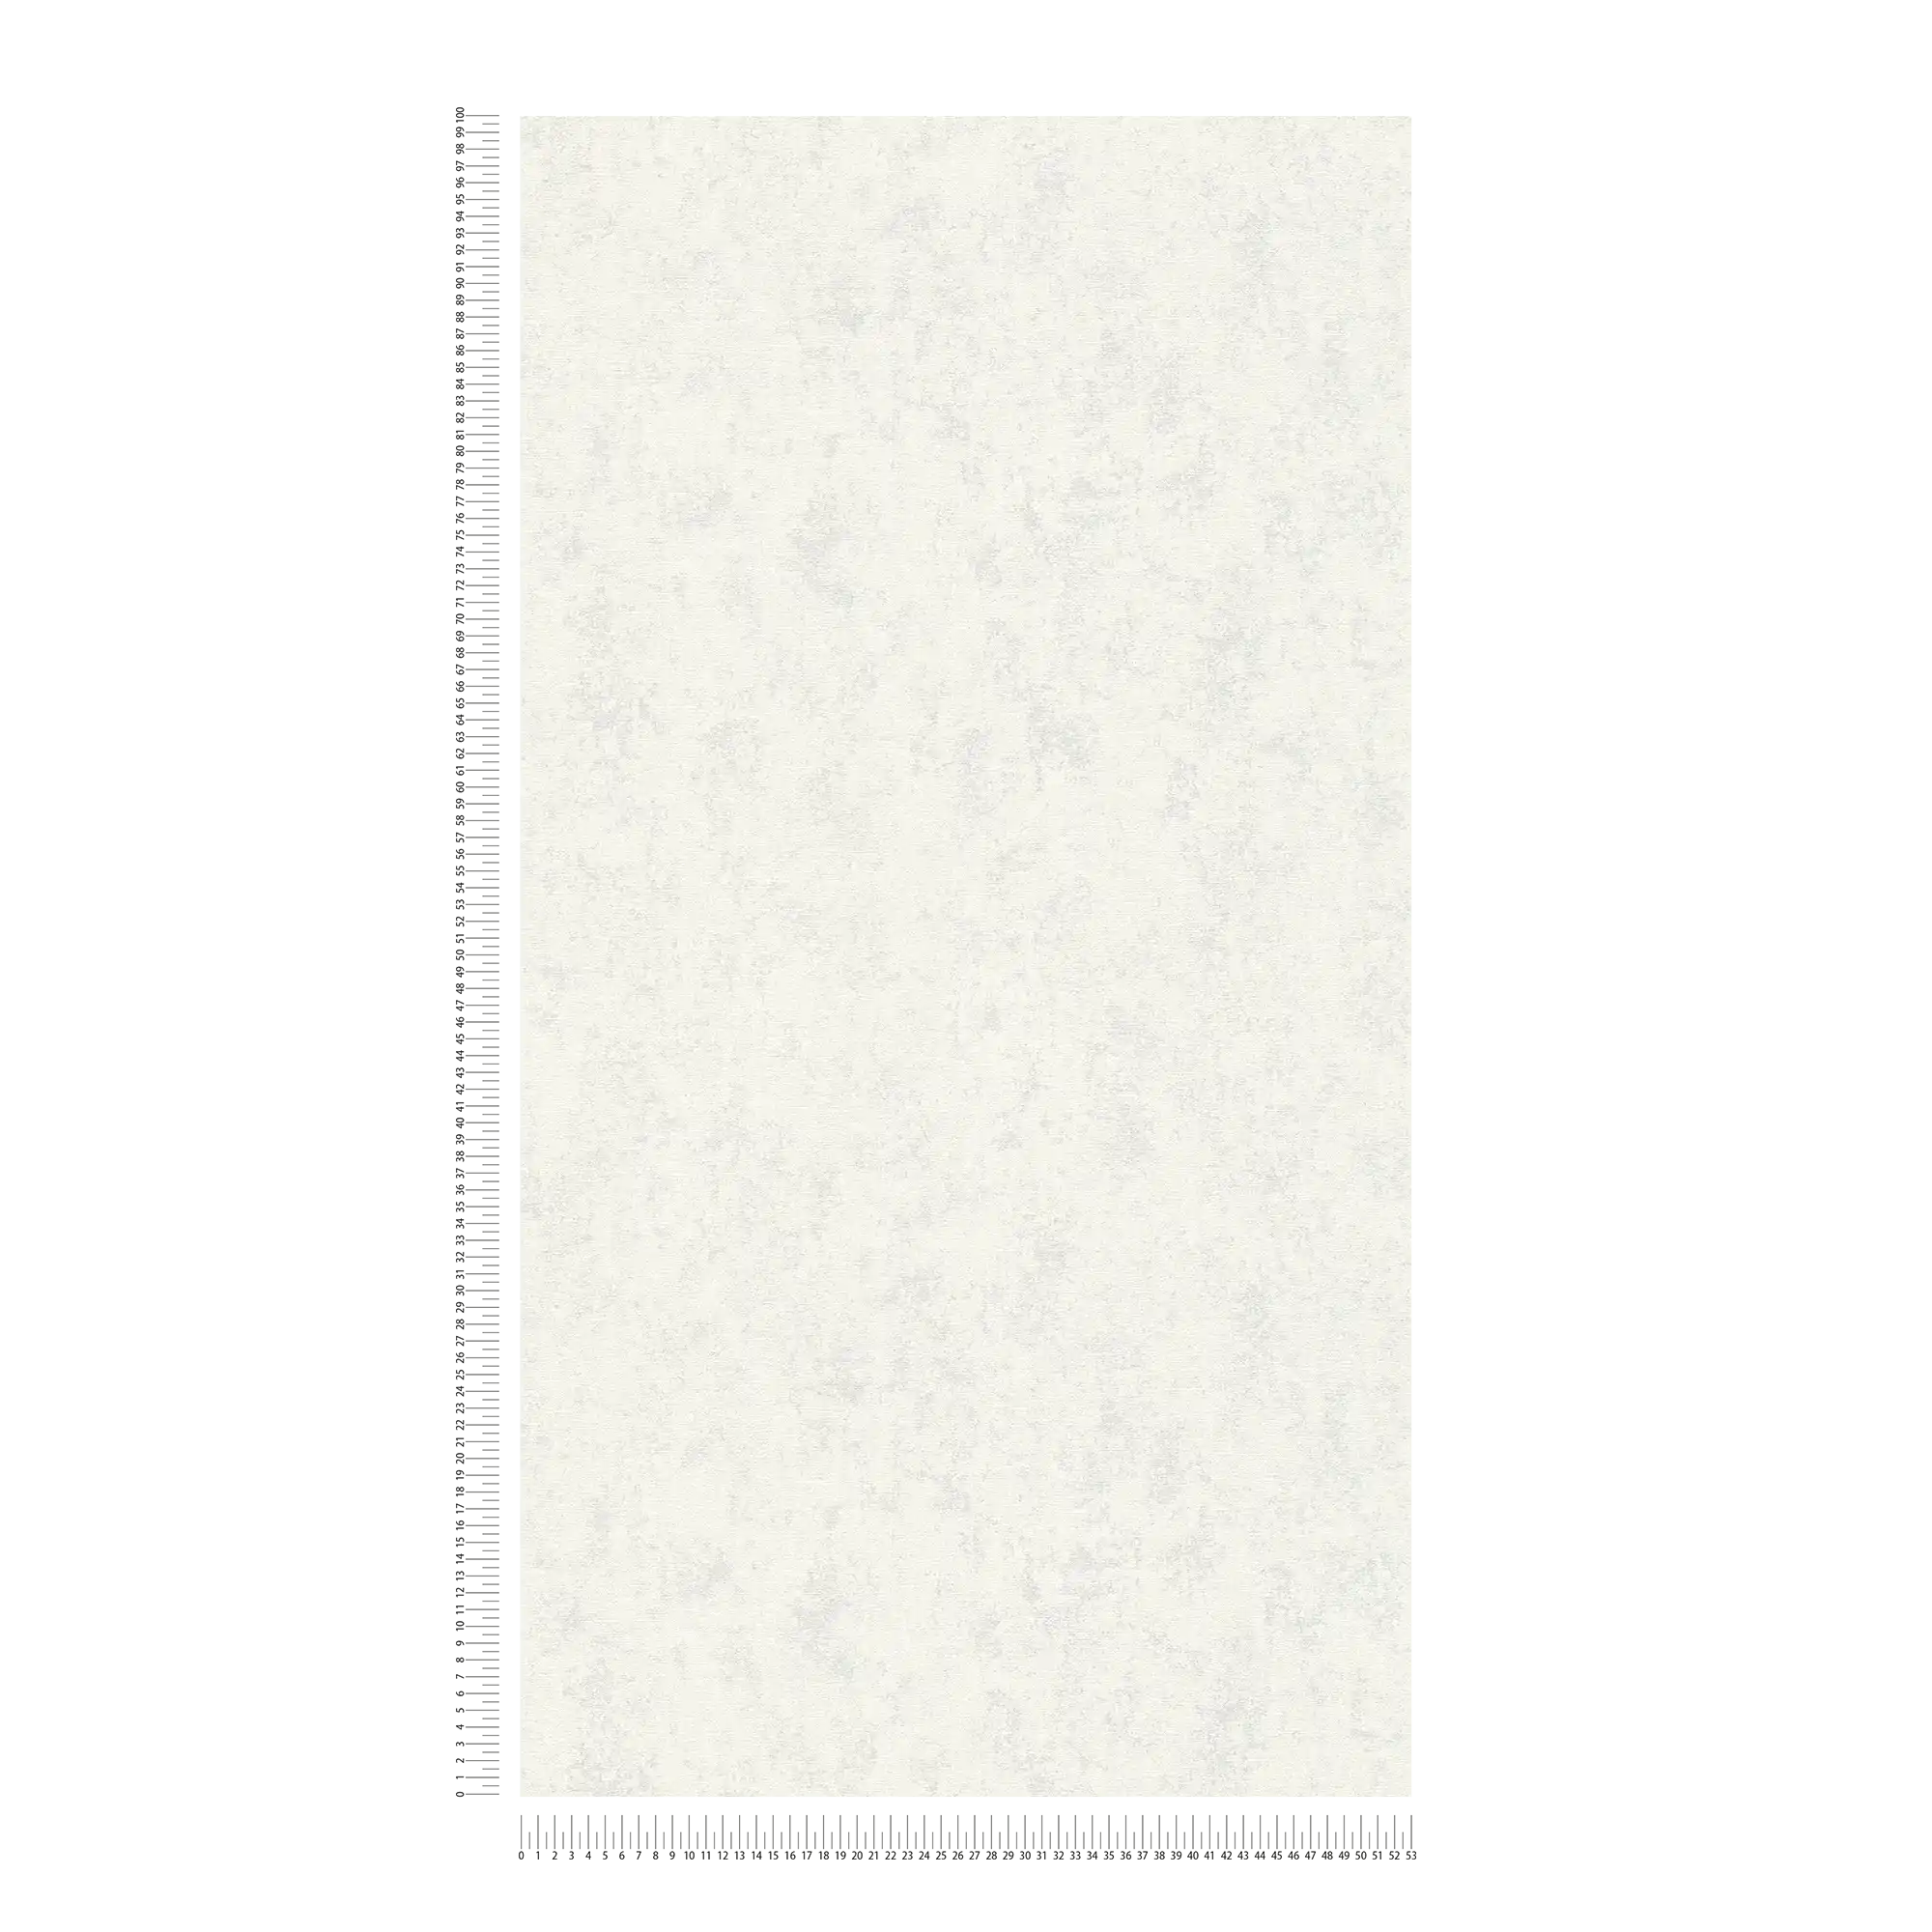             Papier peint de style scandinave uni design structuré - gris, blanc
        